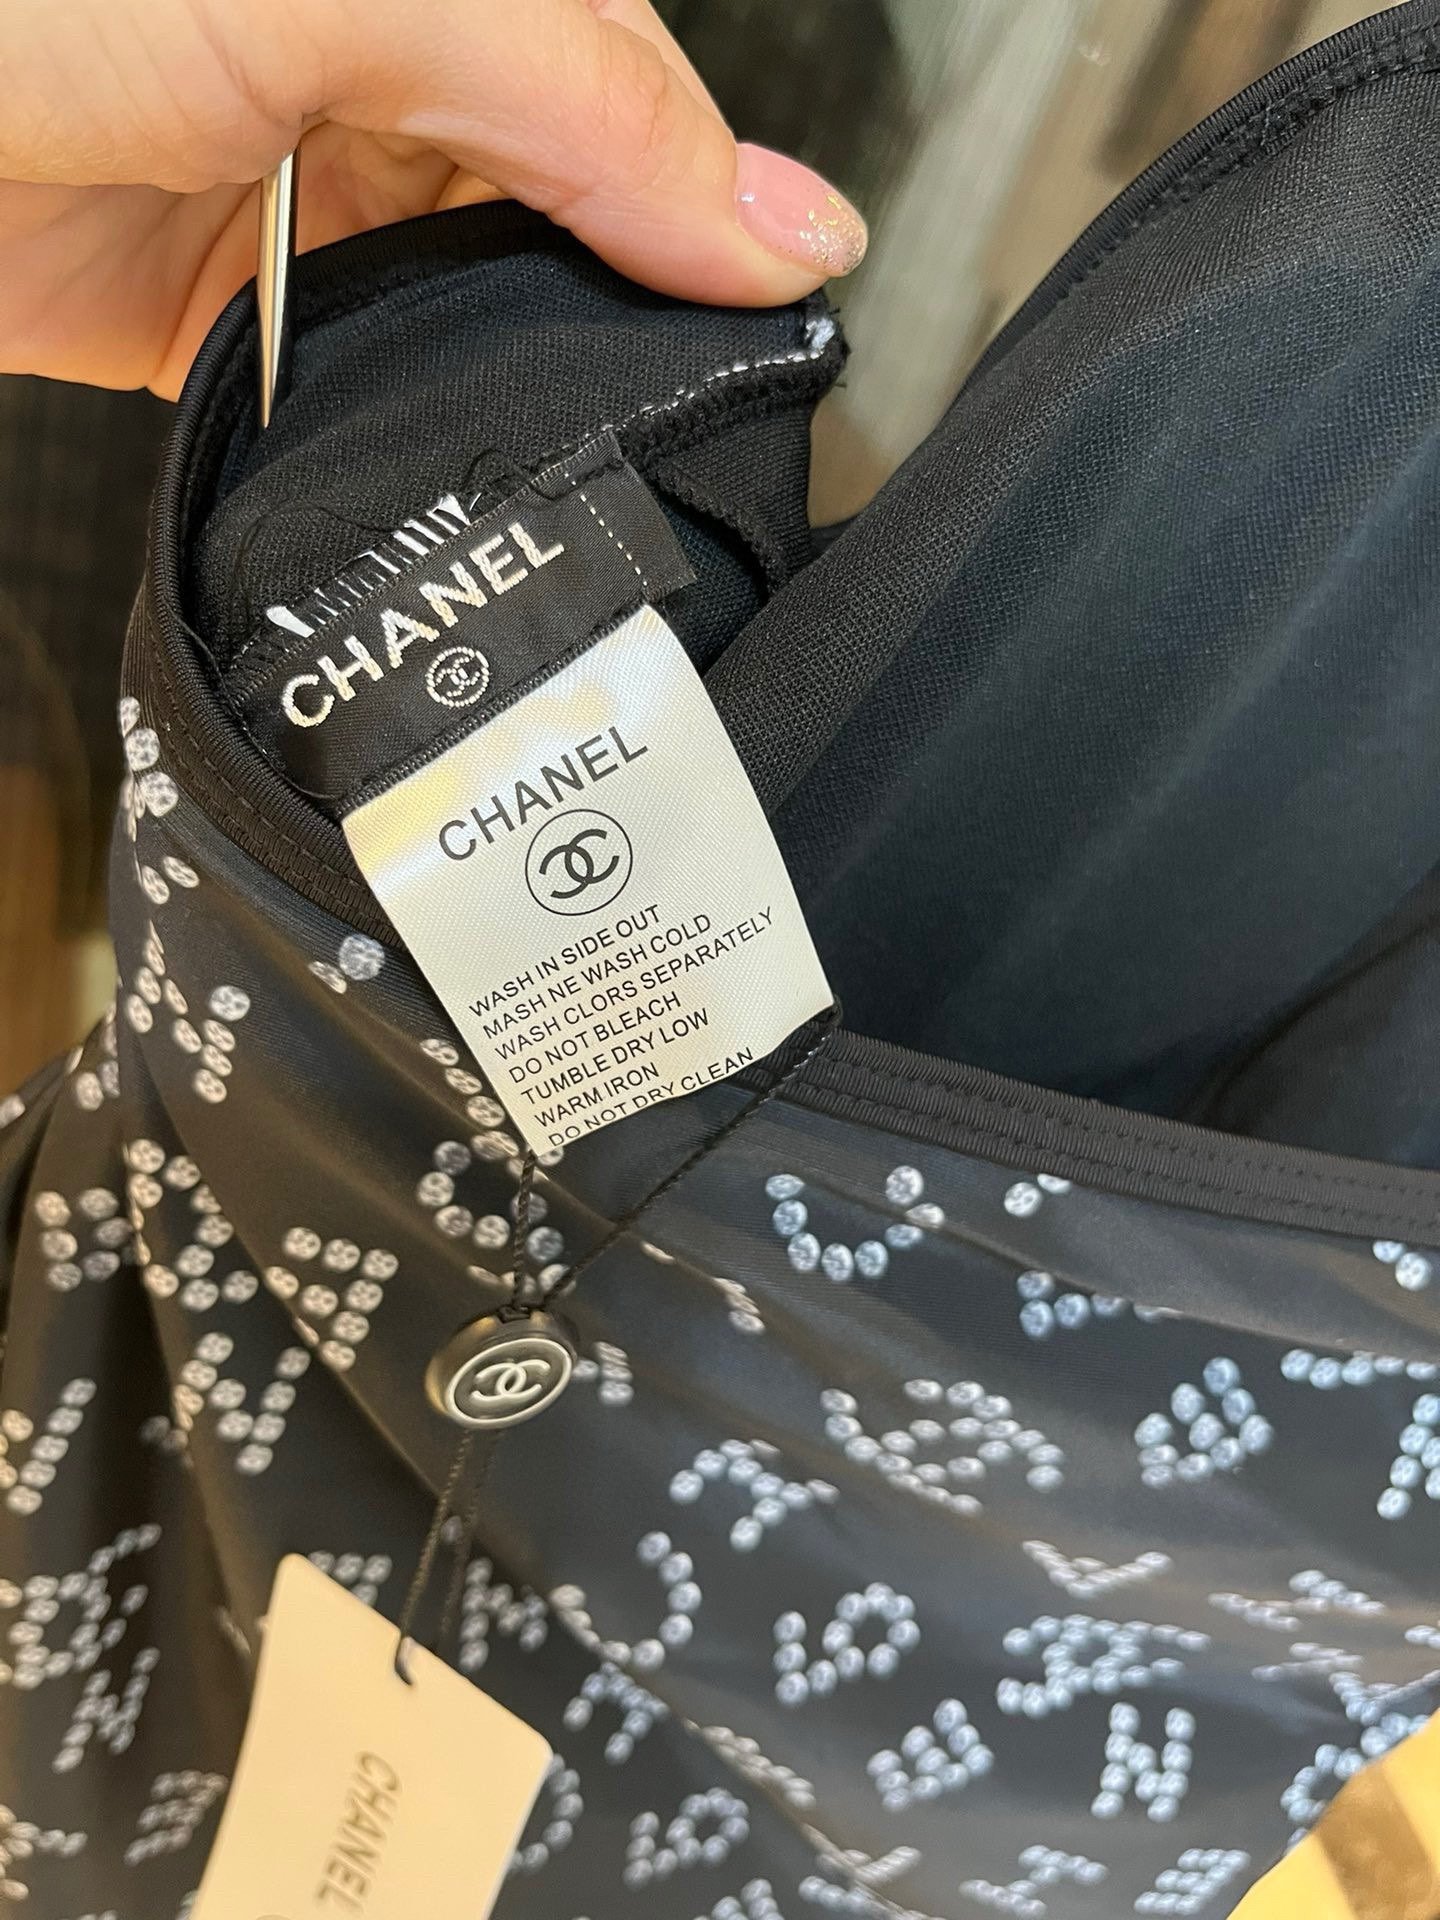 Chanel香奈儿新款连体泳衣适合多种场景的游泳衣️海边游泳池温泉水上乐园漂流都可以内搭也完全可以连体设